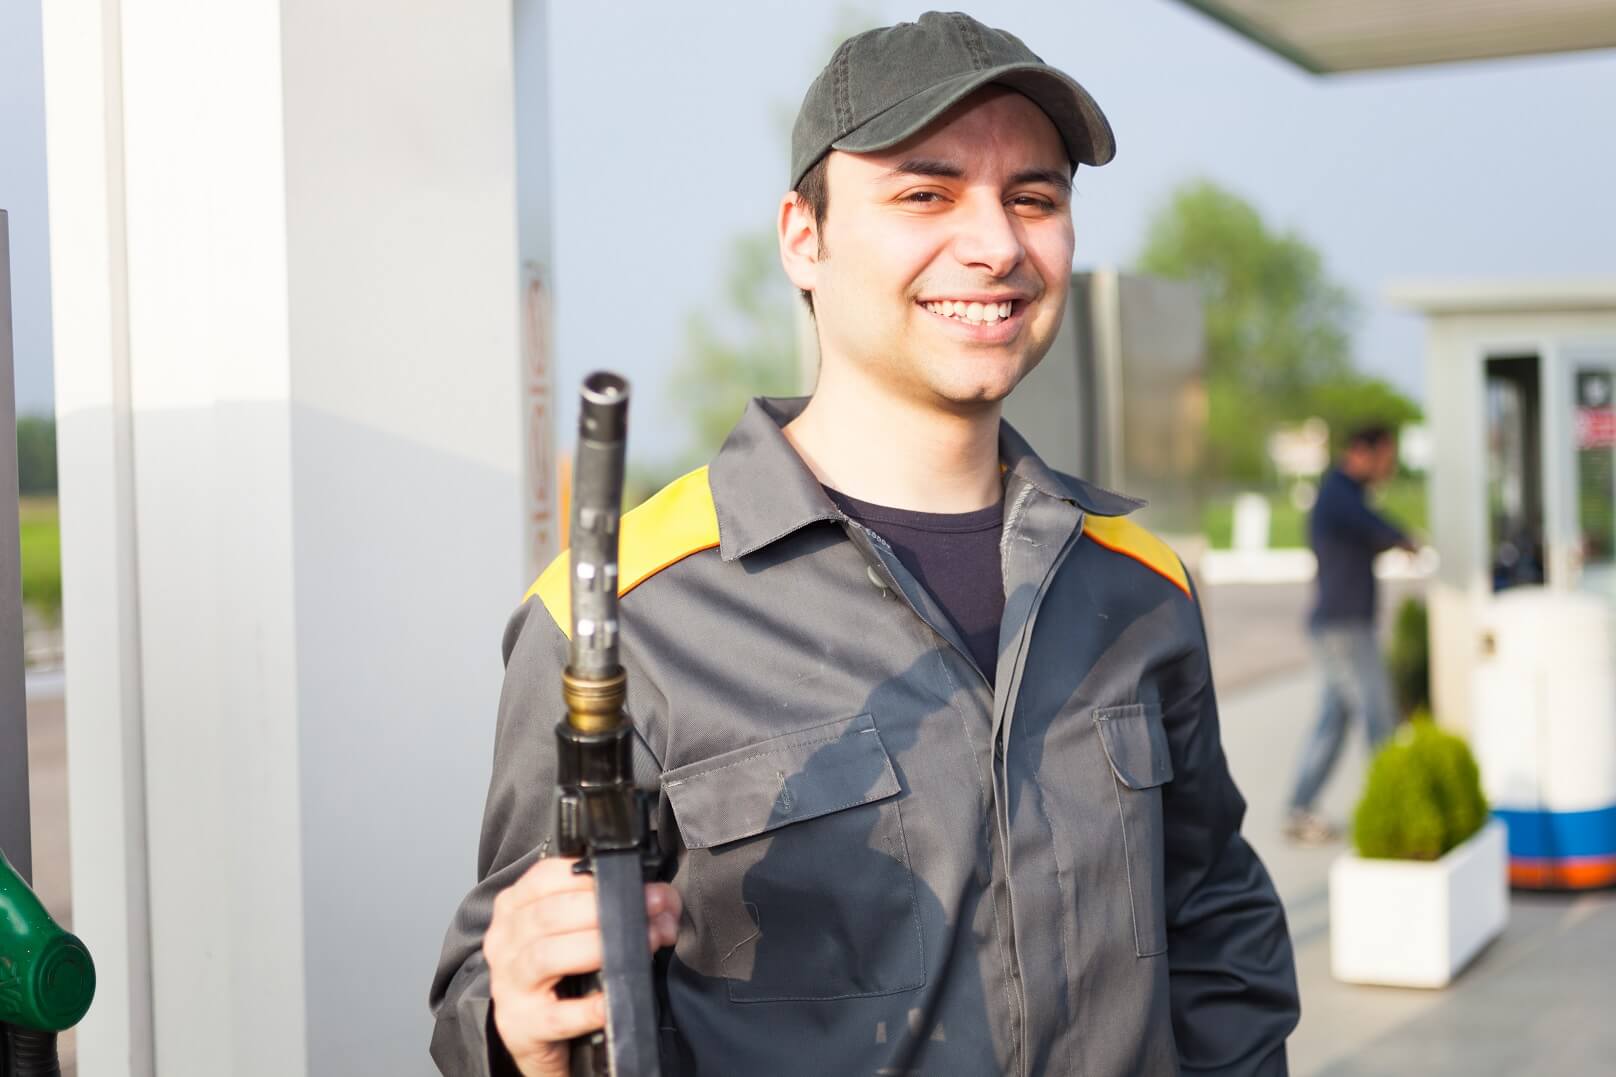 מה יקרה כשהעובד של תחנת הדלק, יבין שהוא לא צריך לעבוד יותר בתחנת הדלק?